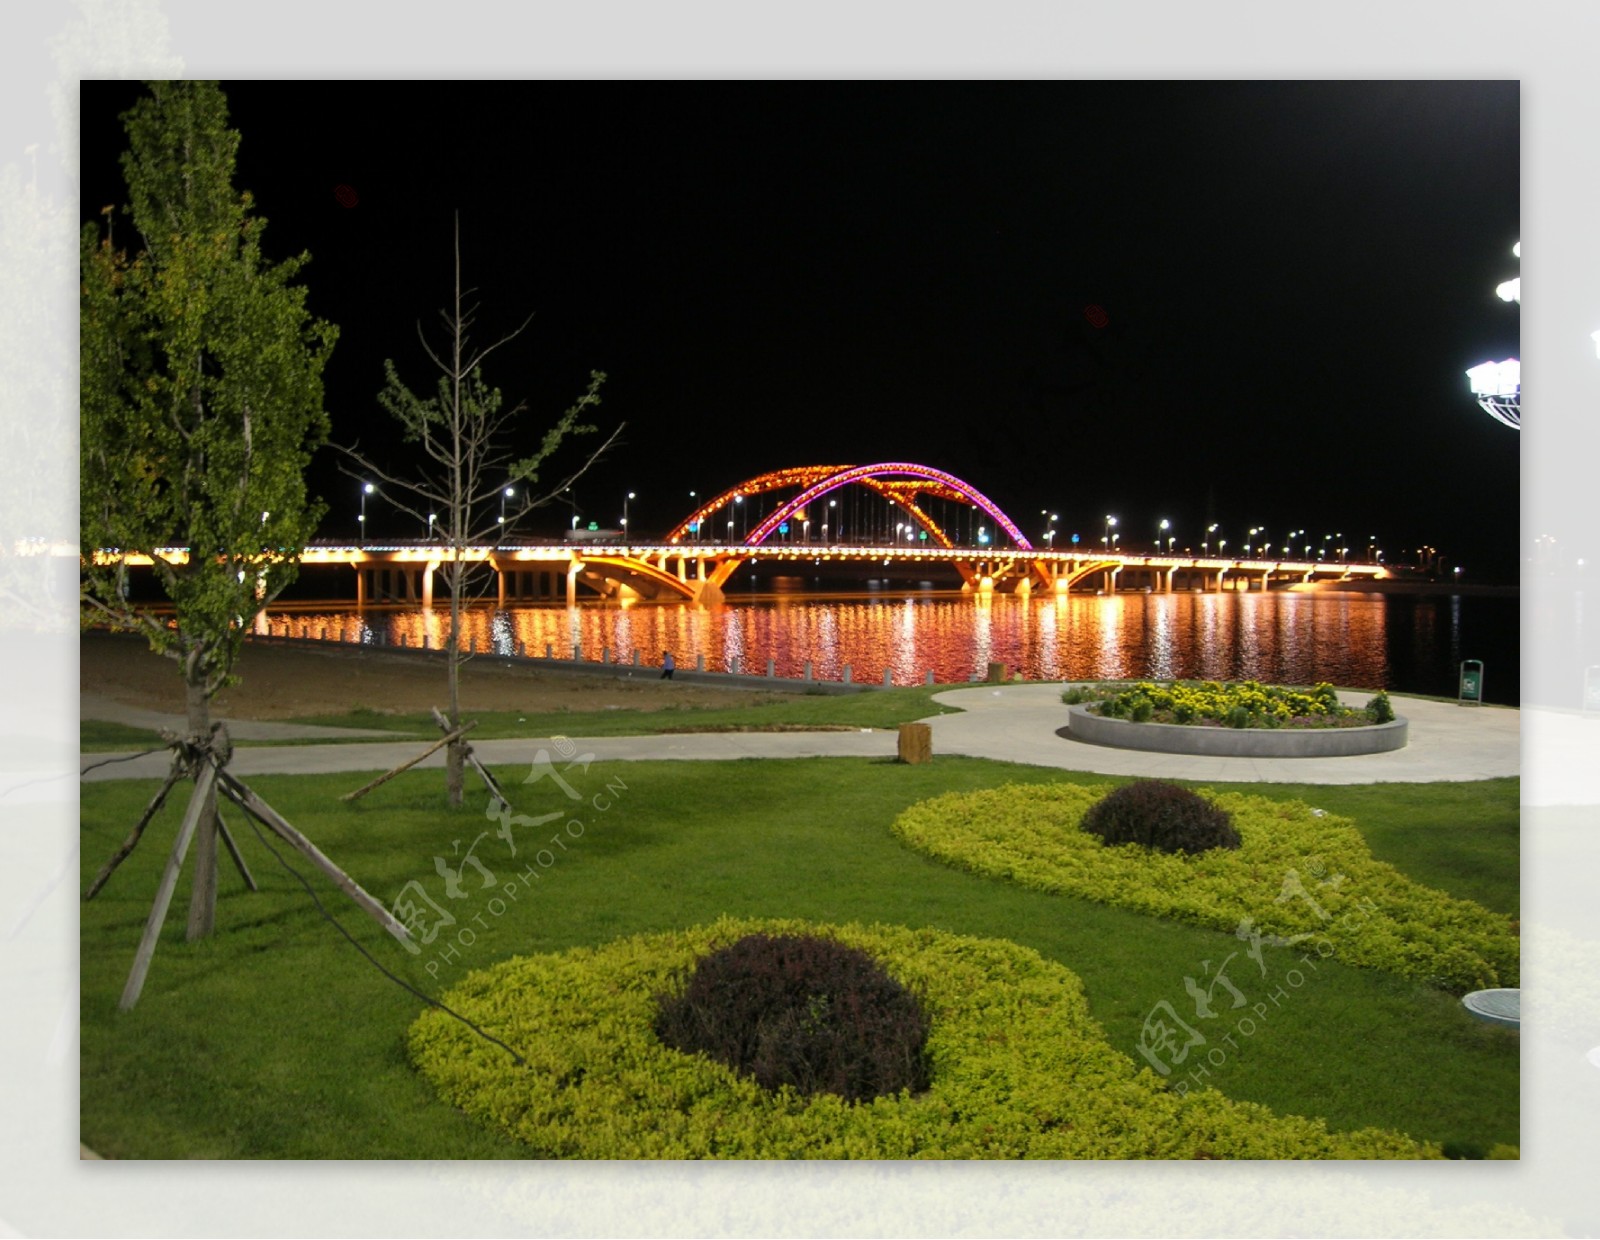 东大桥夜景图片